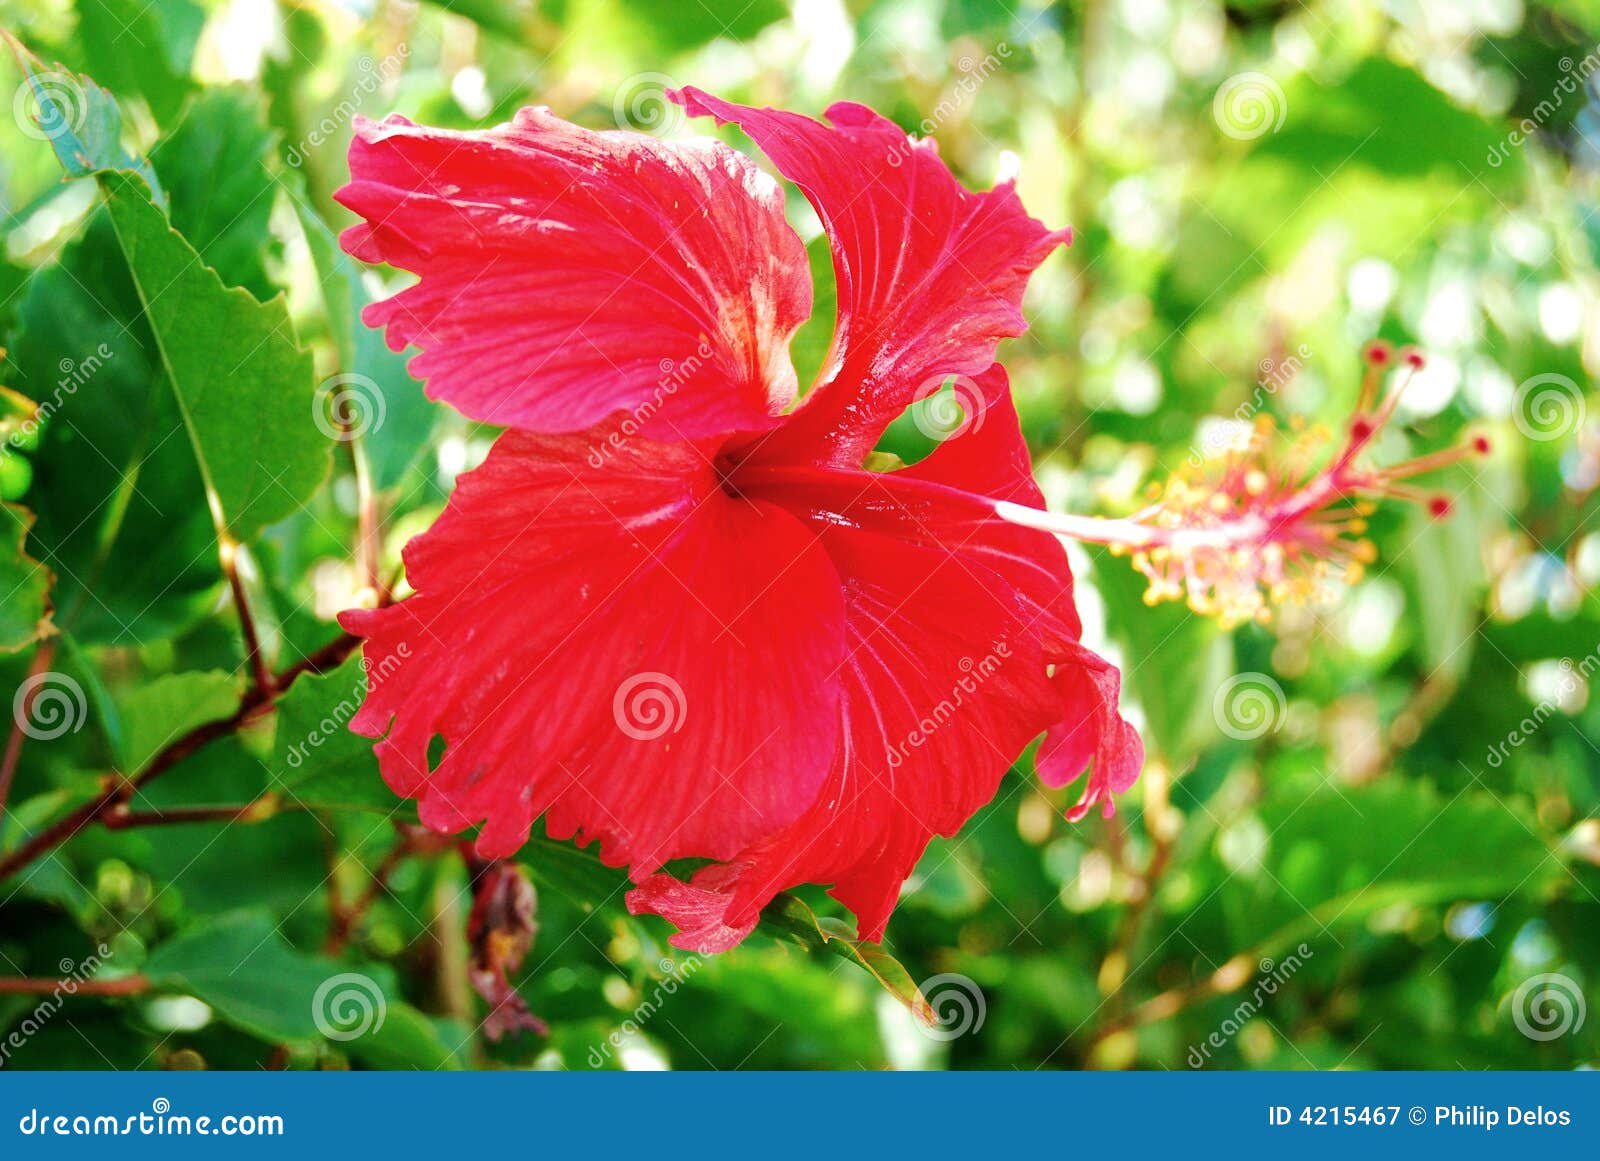 594 Flor Roja El Caribe Fotos de stock - Fotos libres de regalías de  Dreamstime